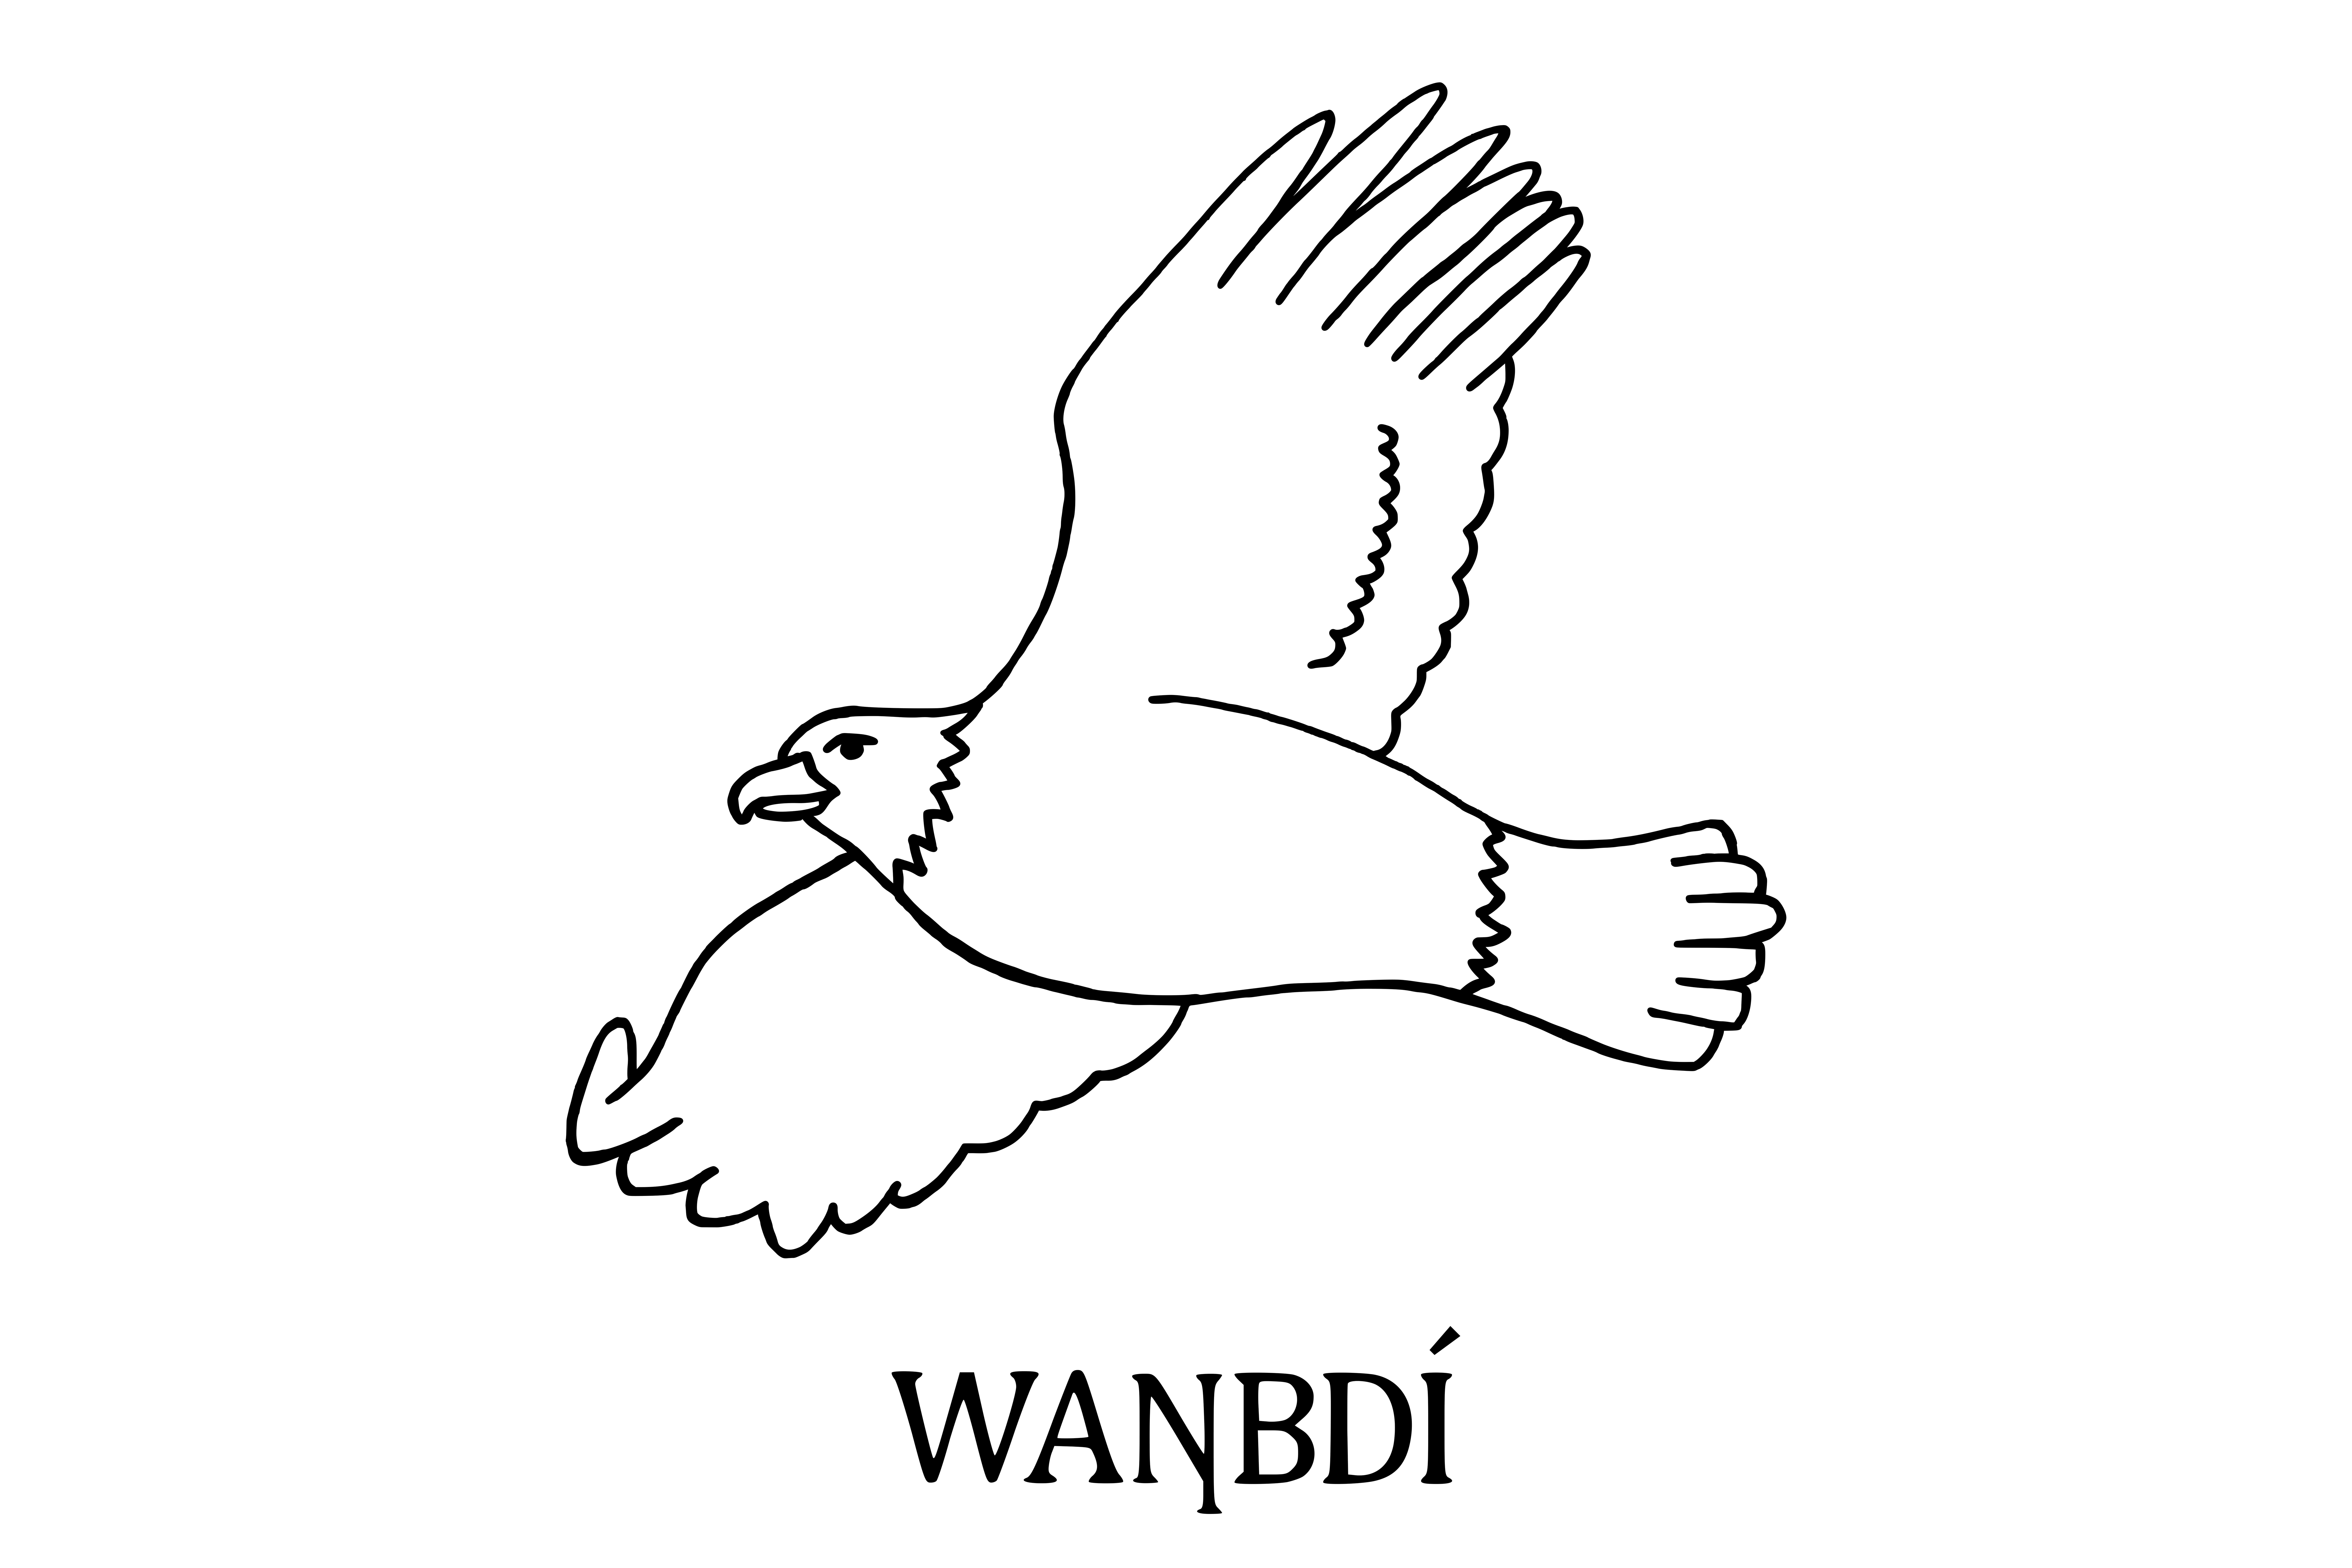 Wanbdi-Eagle Sidewalk Stamp